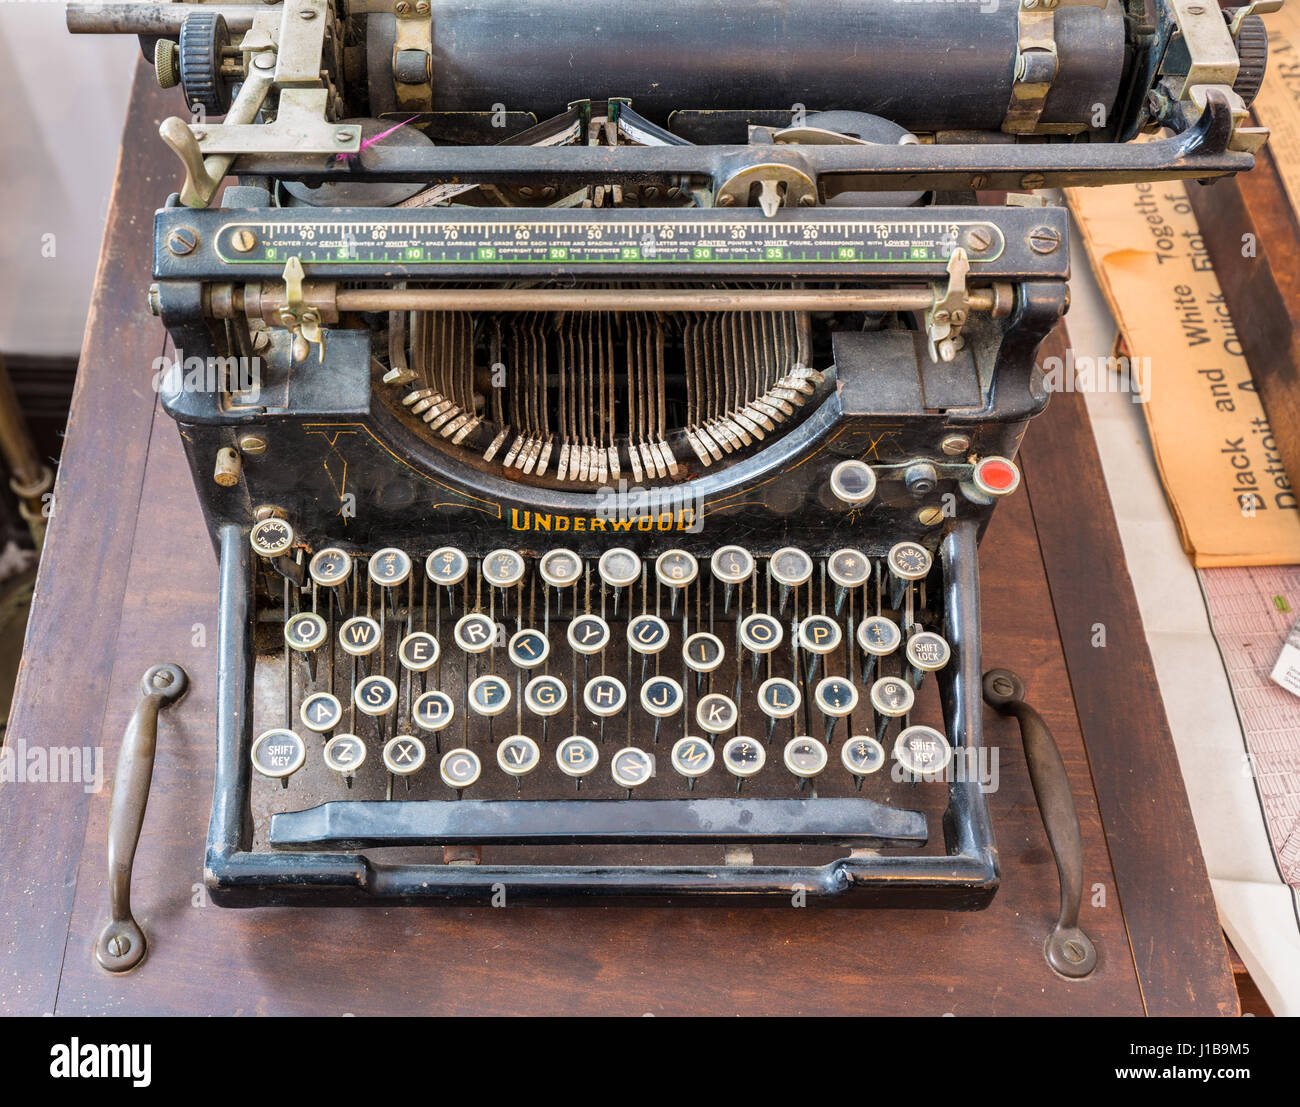 Vieille machine à écrire sur une table en bois Banque D'Images